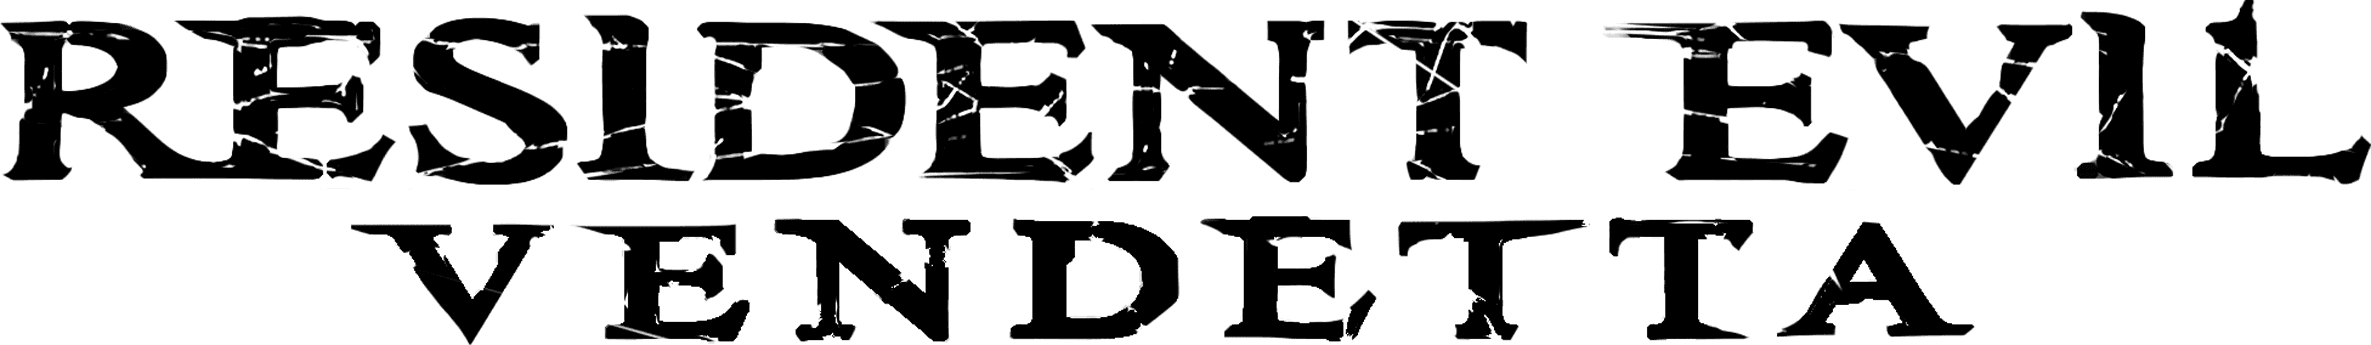 Resident Evil: Vendetta logo